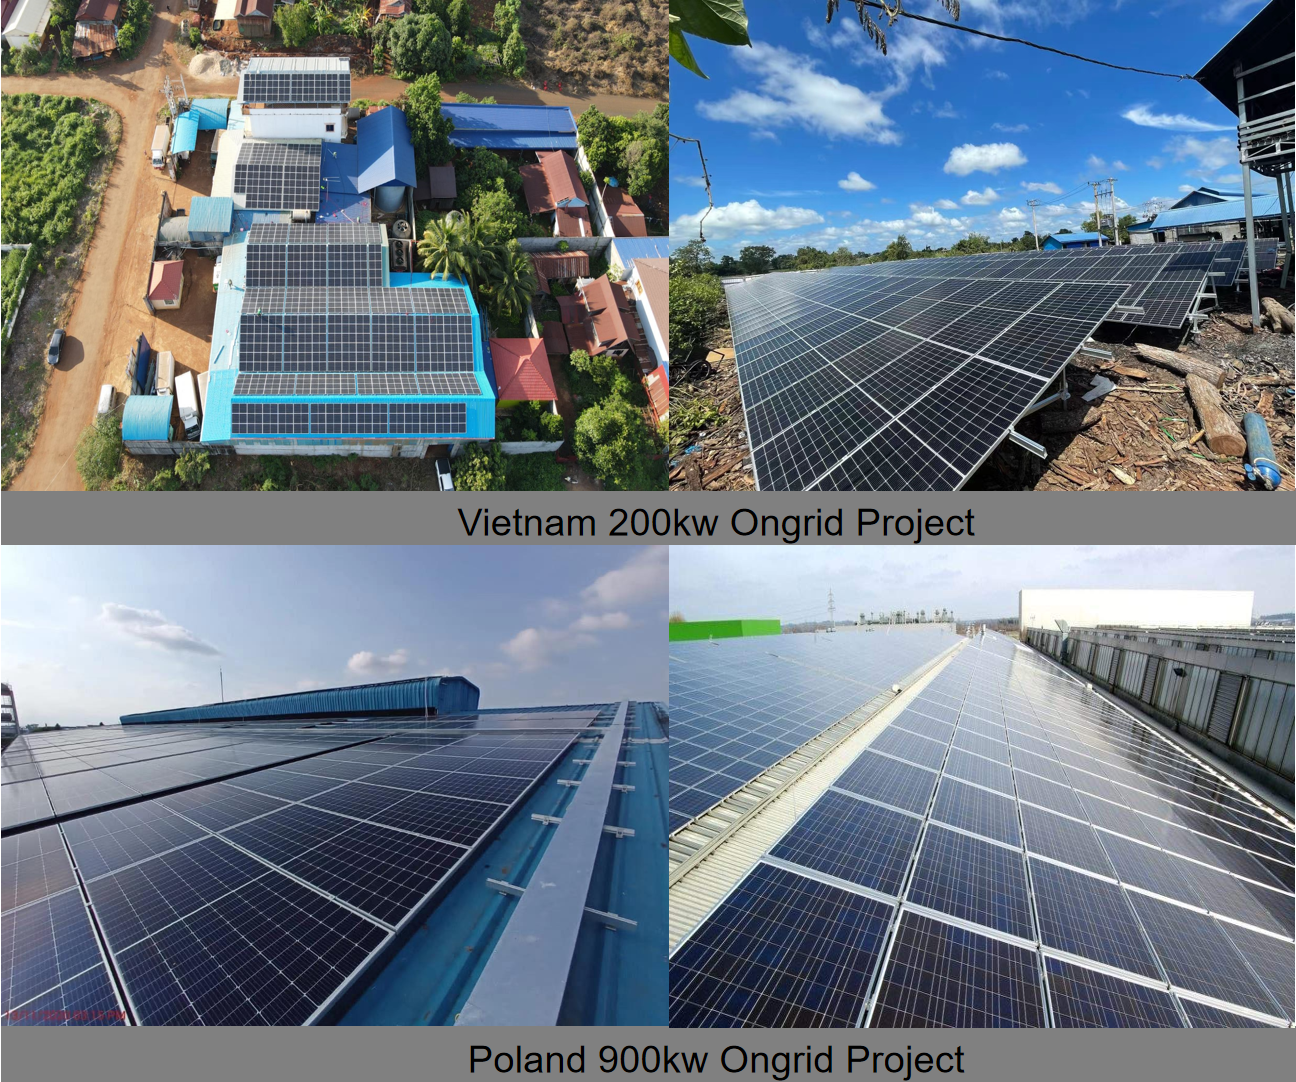  LVTOPSUN High Efficiency 450w Solar Panel Photovoltaic Module Mono Cell 